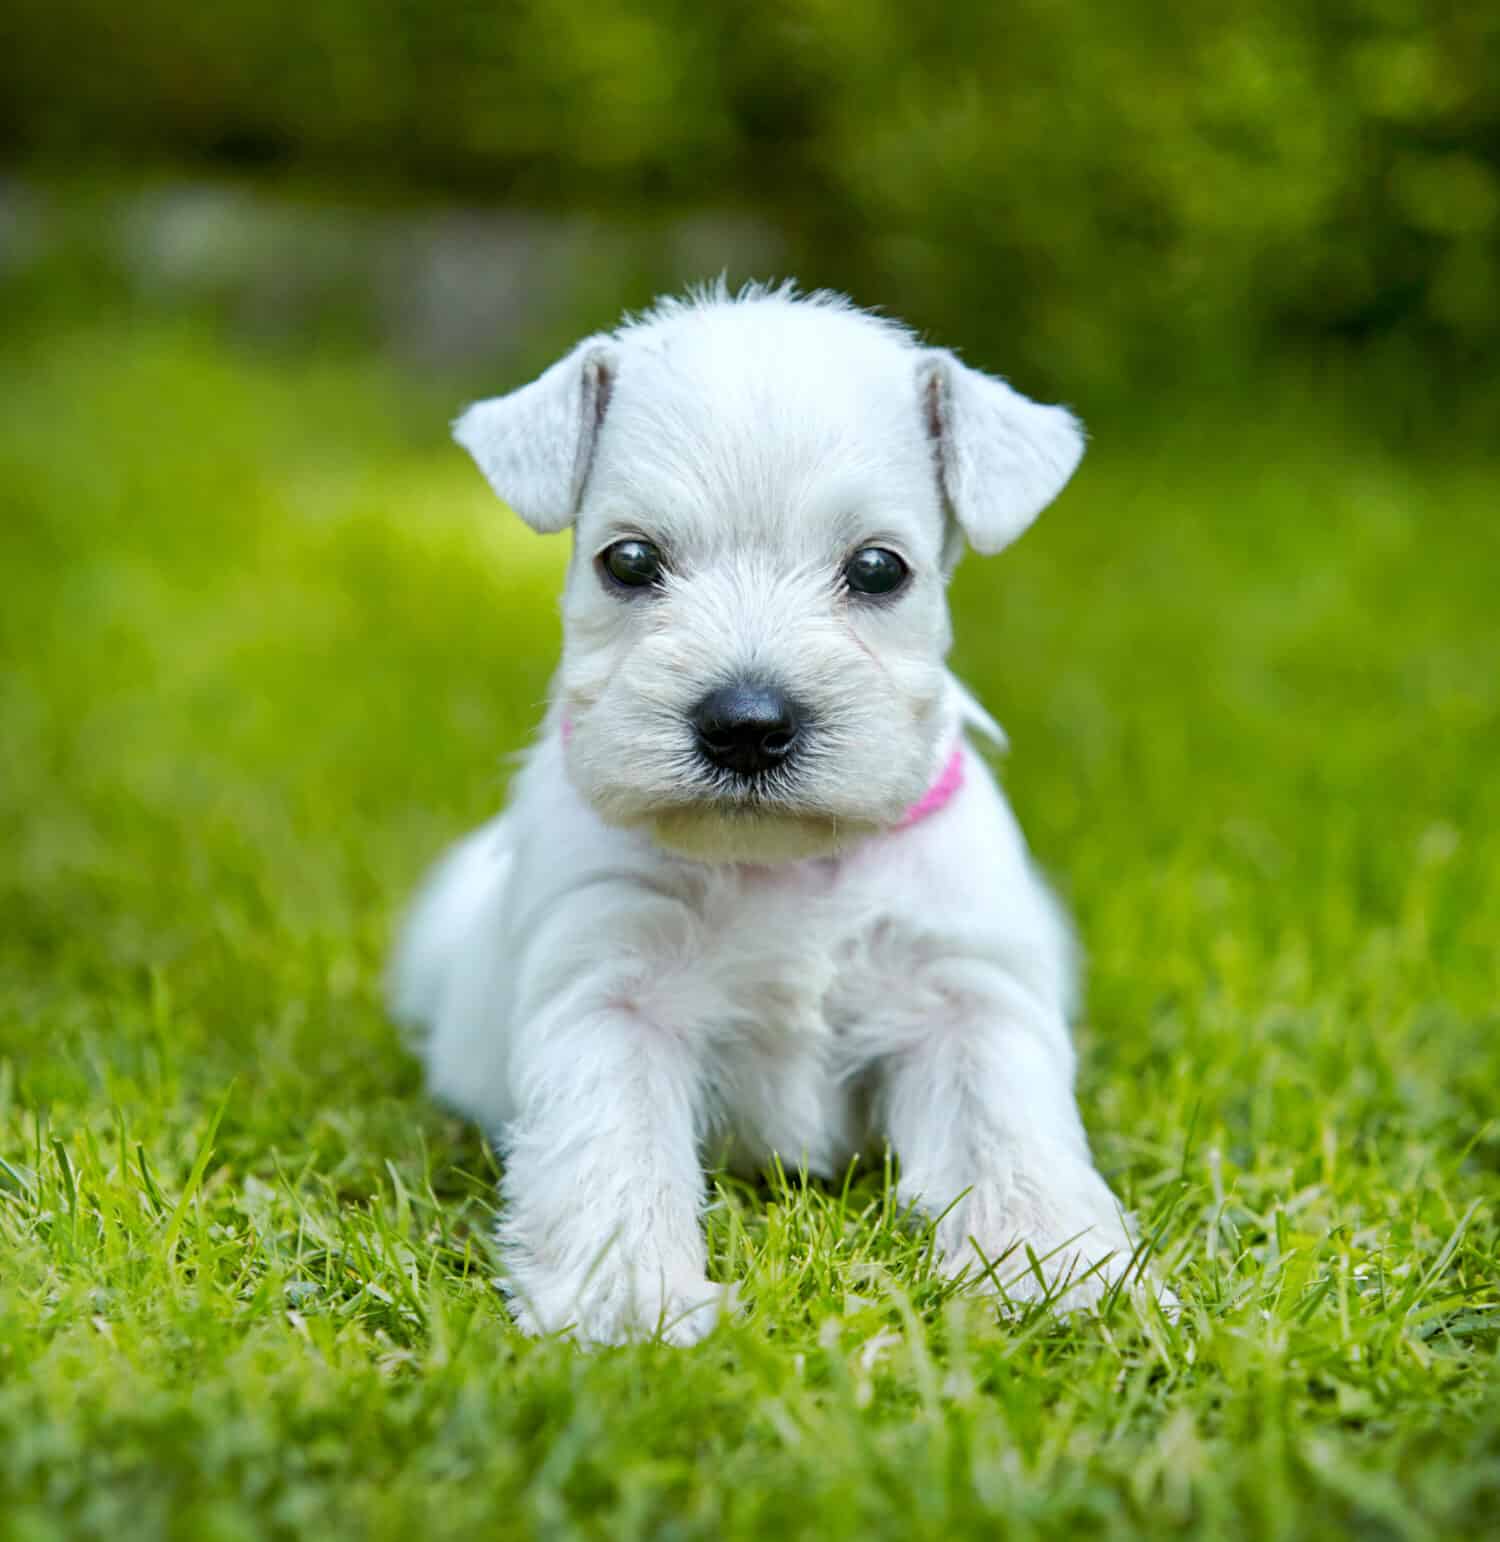 white schnauzer puppy in a green grass